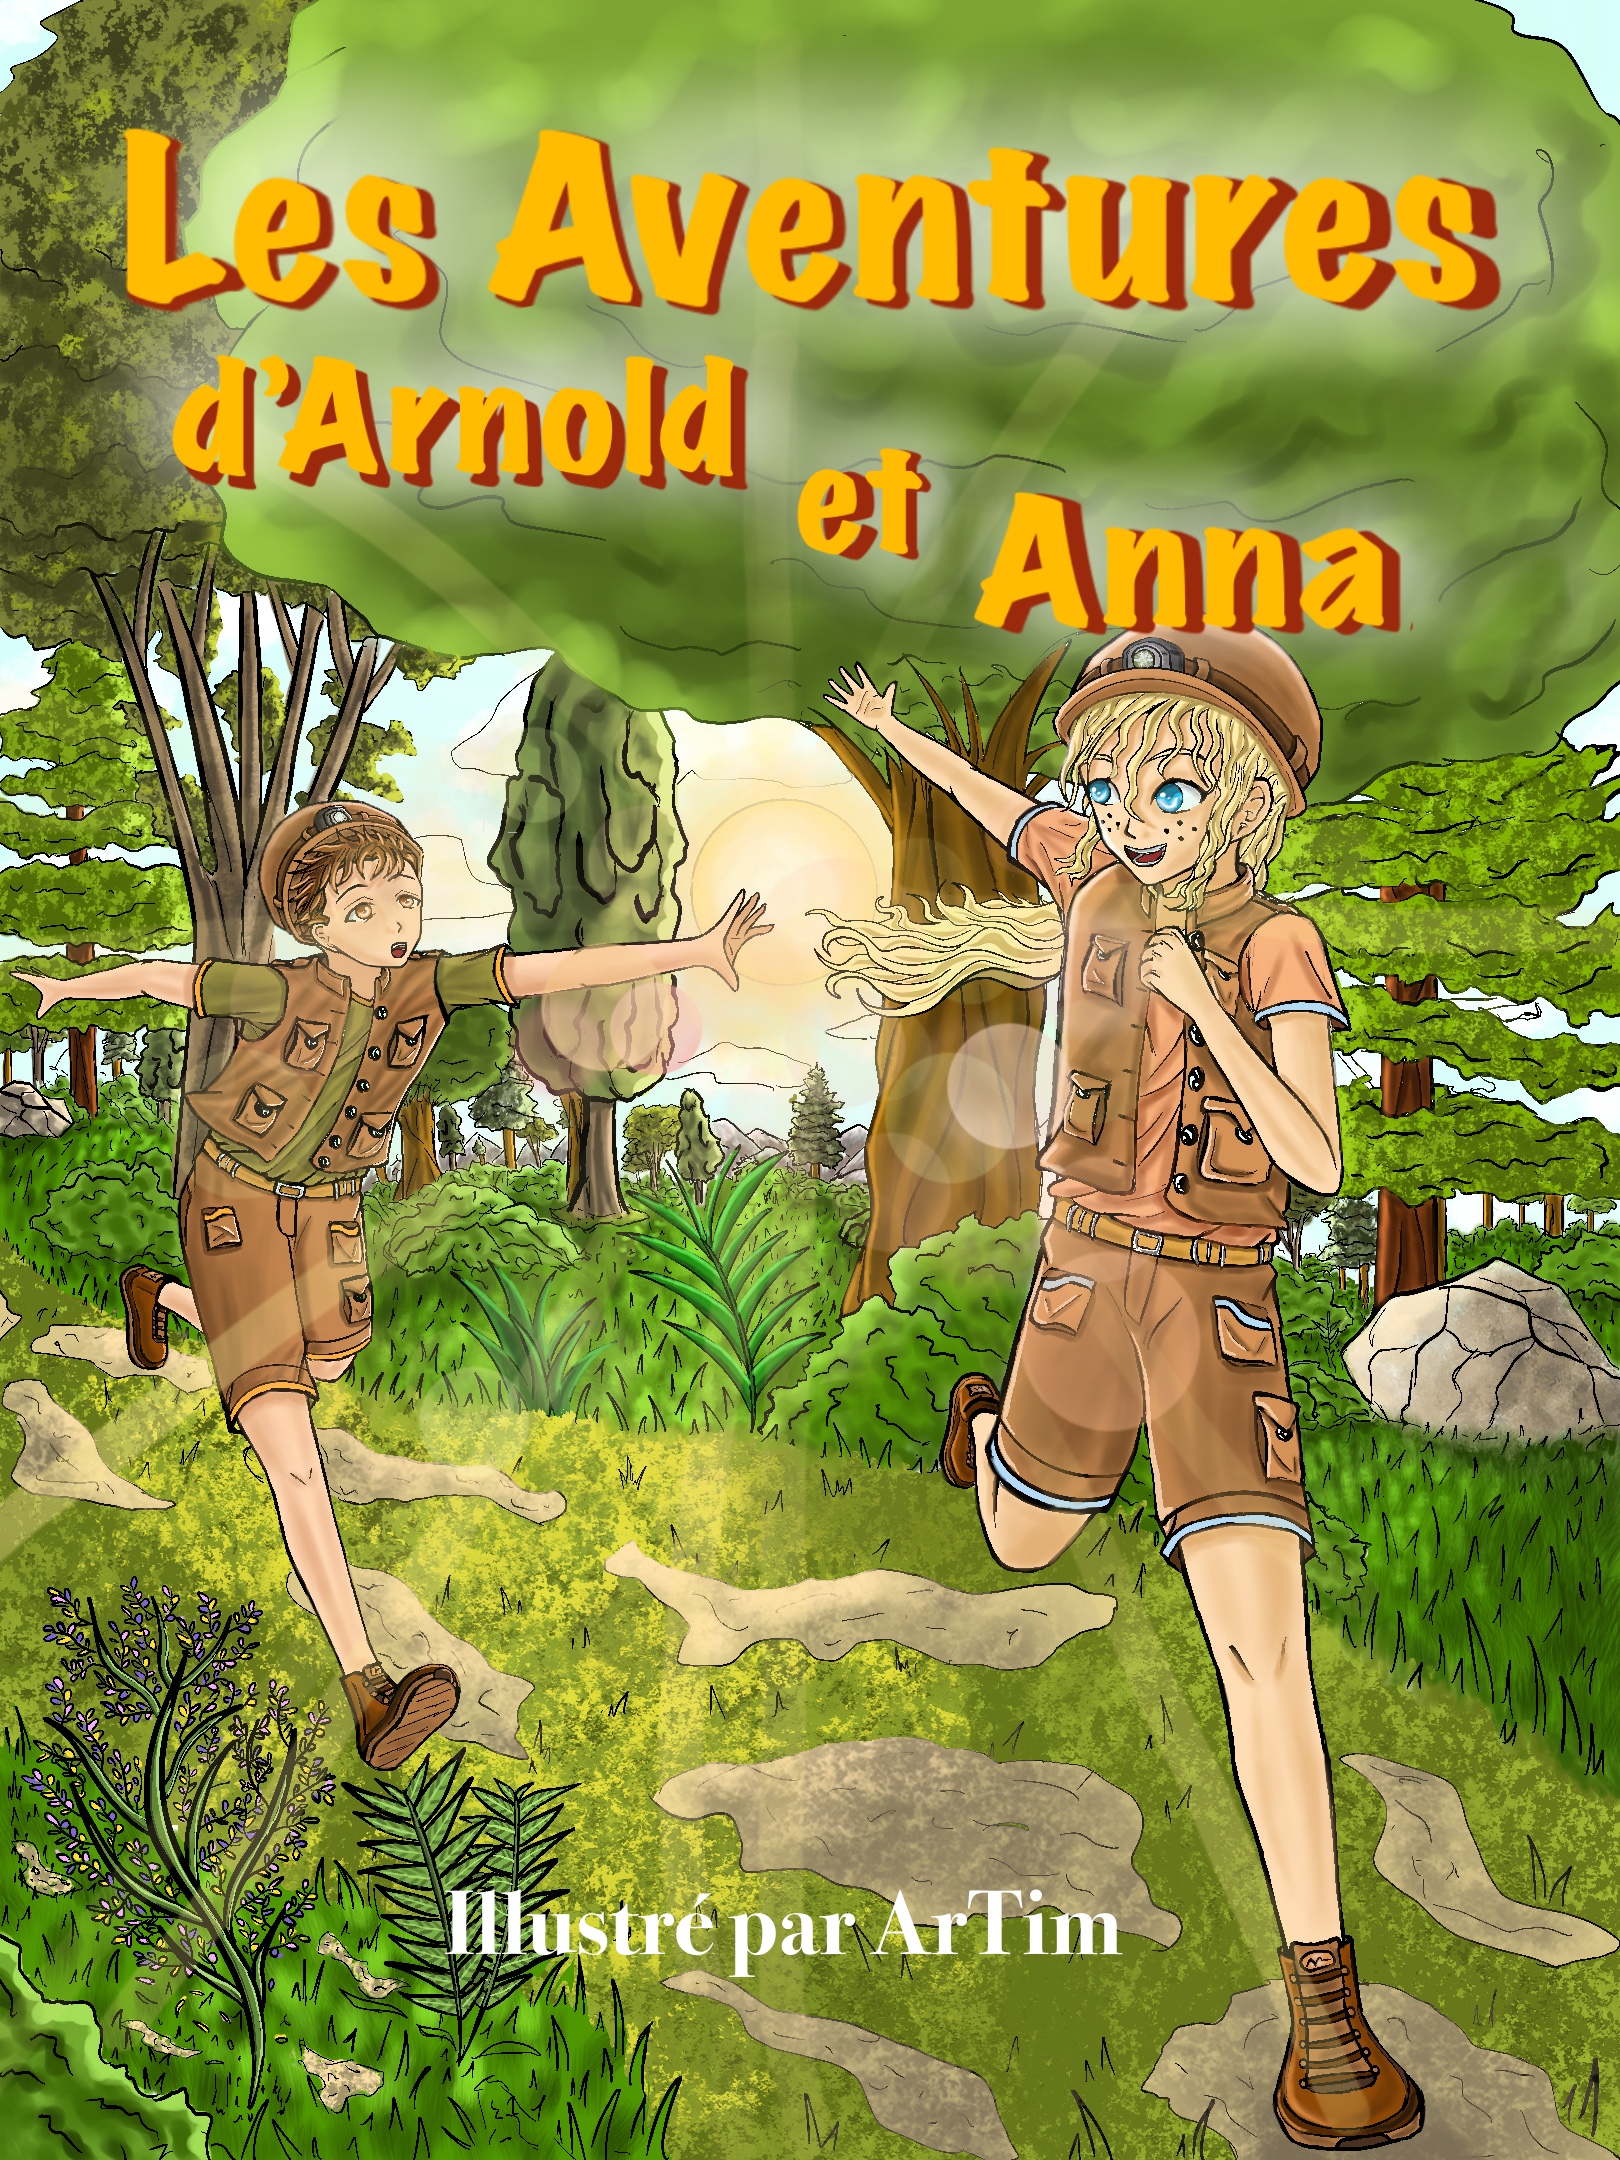 Arnold et Anna.JPG